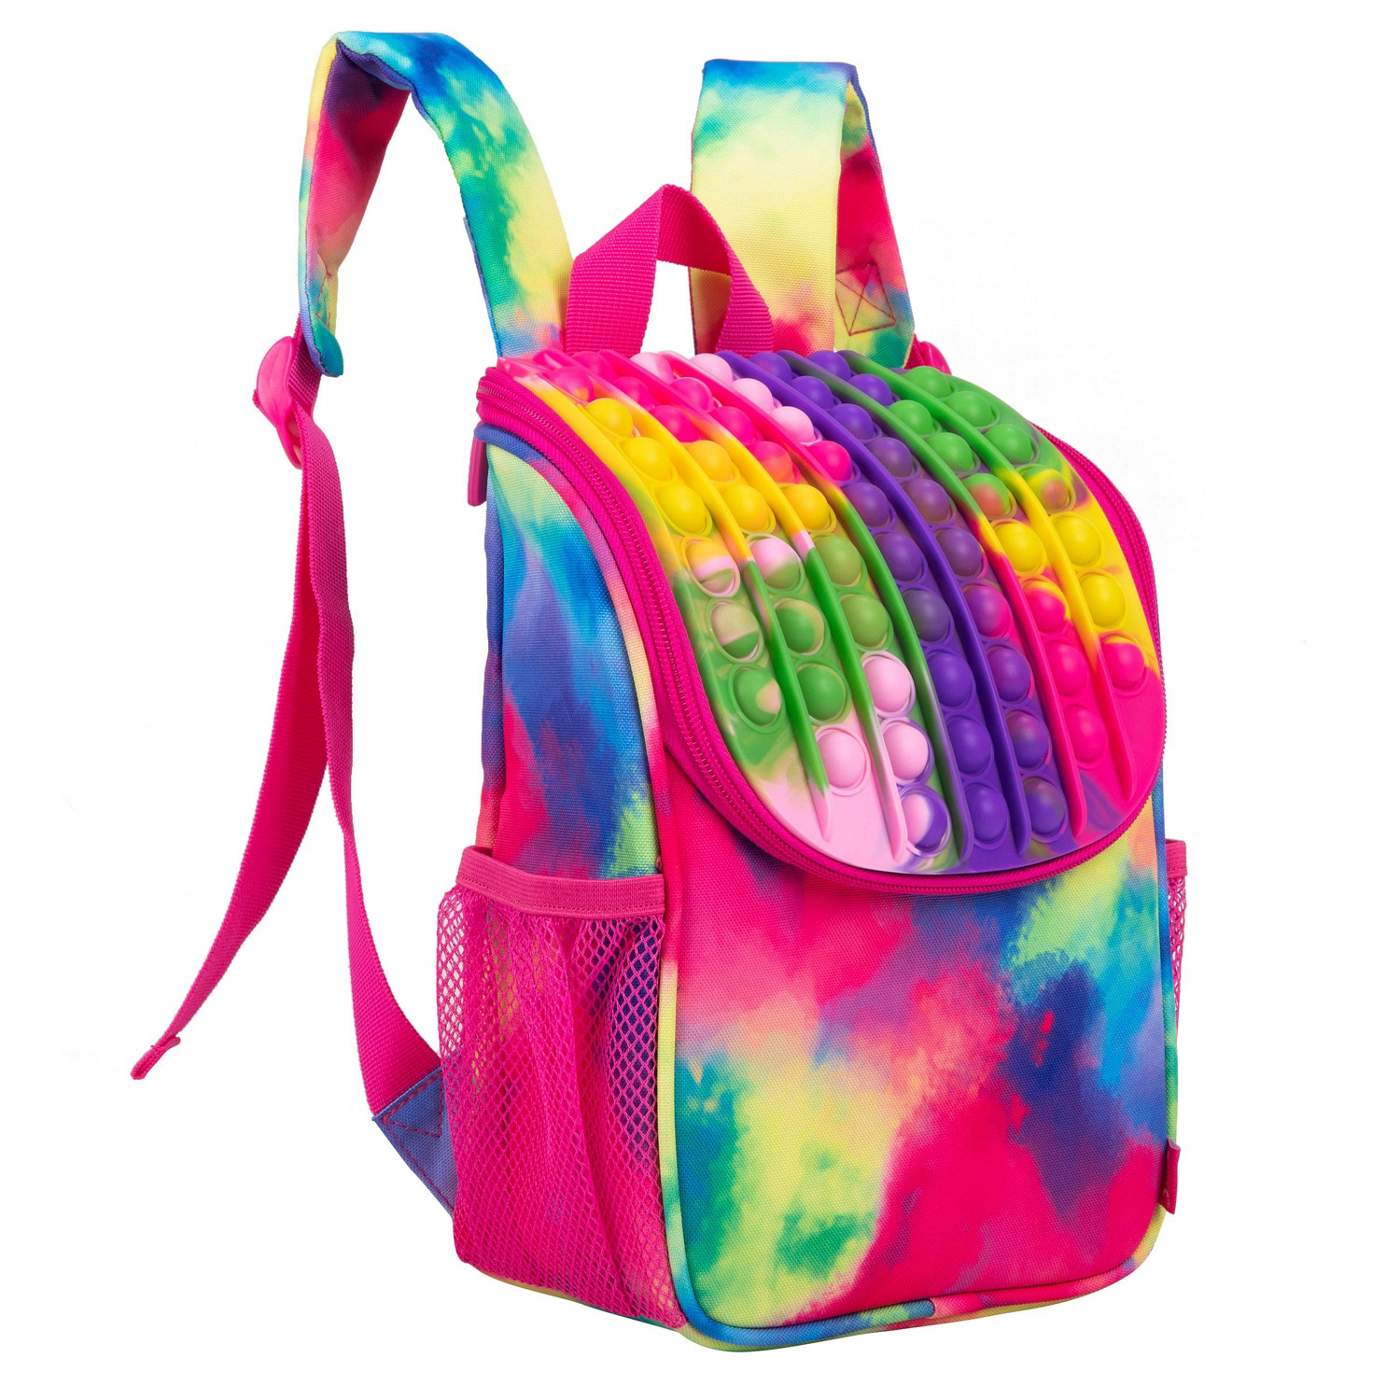 ZIPIT Zip n' Pop Mini Backpack - Tie Dye; image 4 of 5